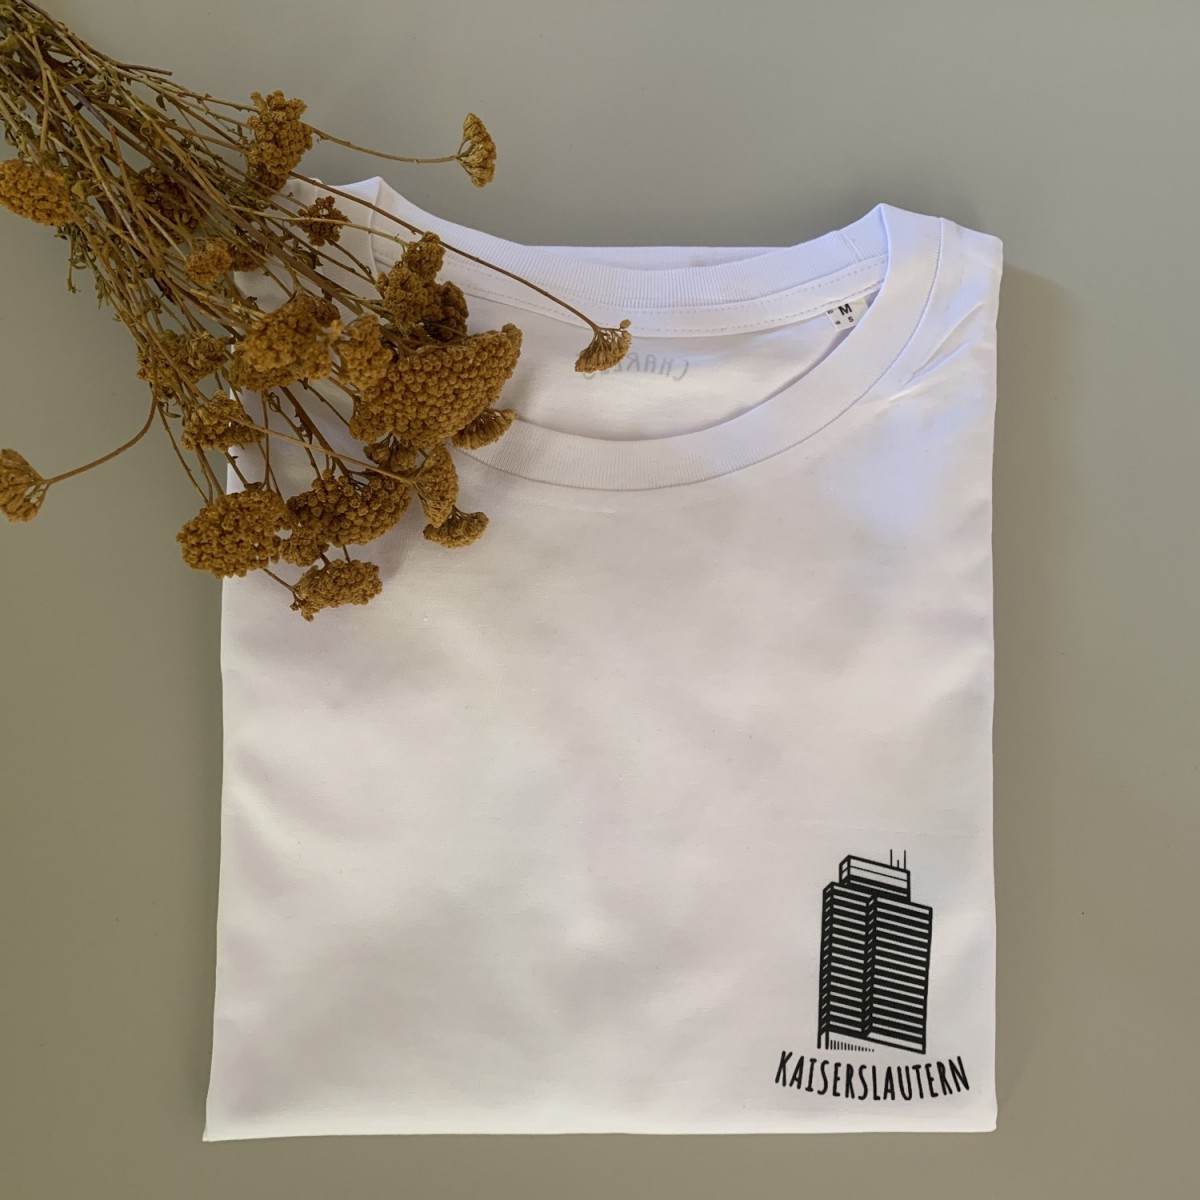 Charles / Shirt Kaiserslautern / 100% Biobaumwolle / Fair Wear zertifiziert 